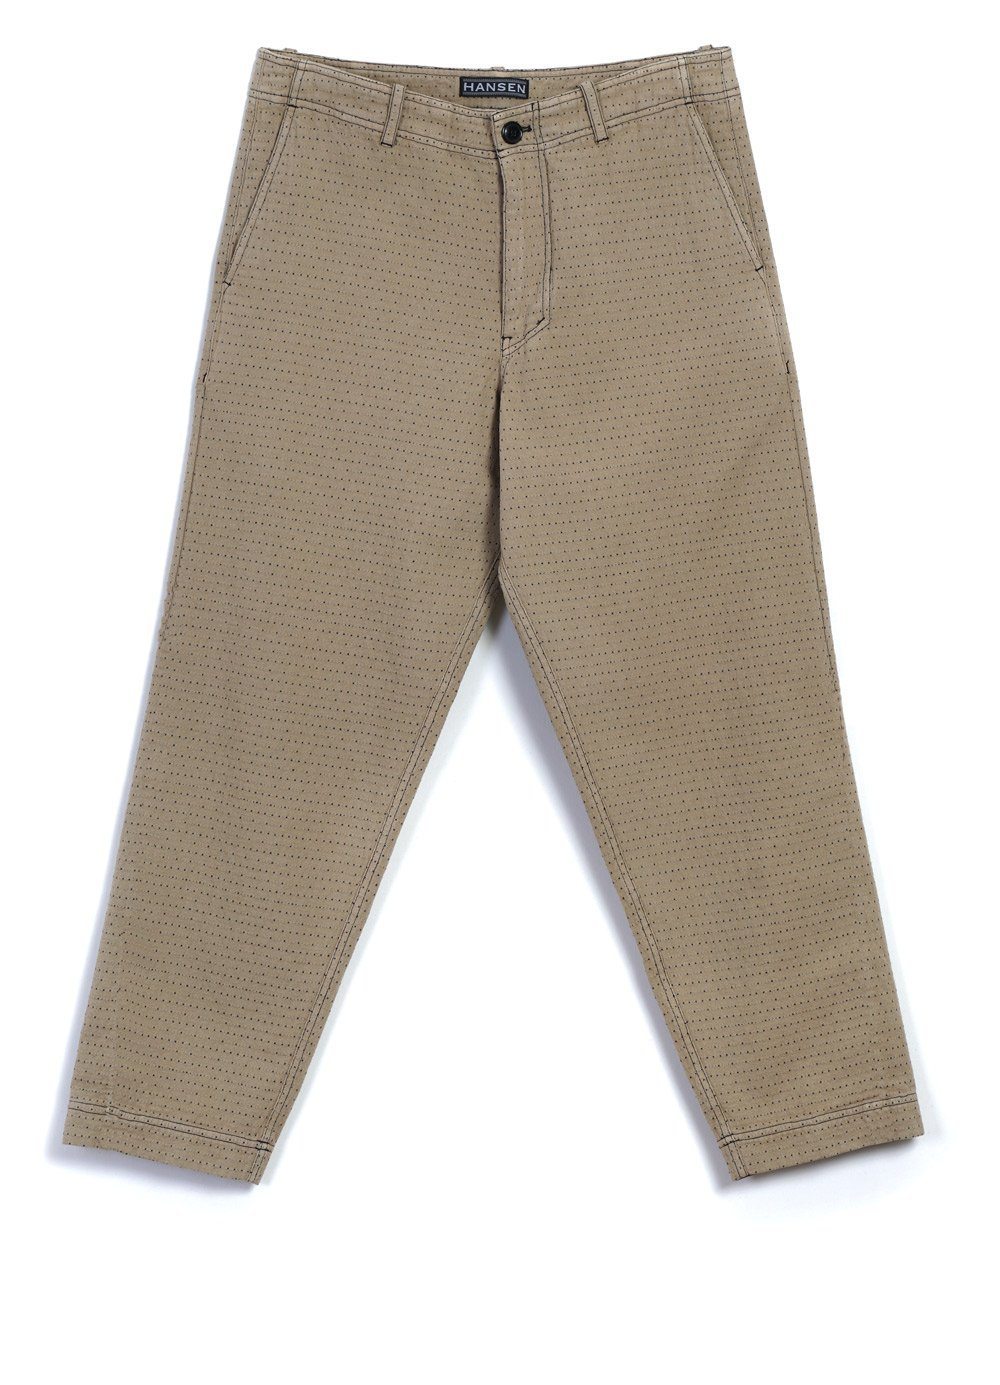 HANSEN GARMENTS - TRYGVE | Wide Cut Cropped Trousers | Beige - HANSEN Garments